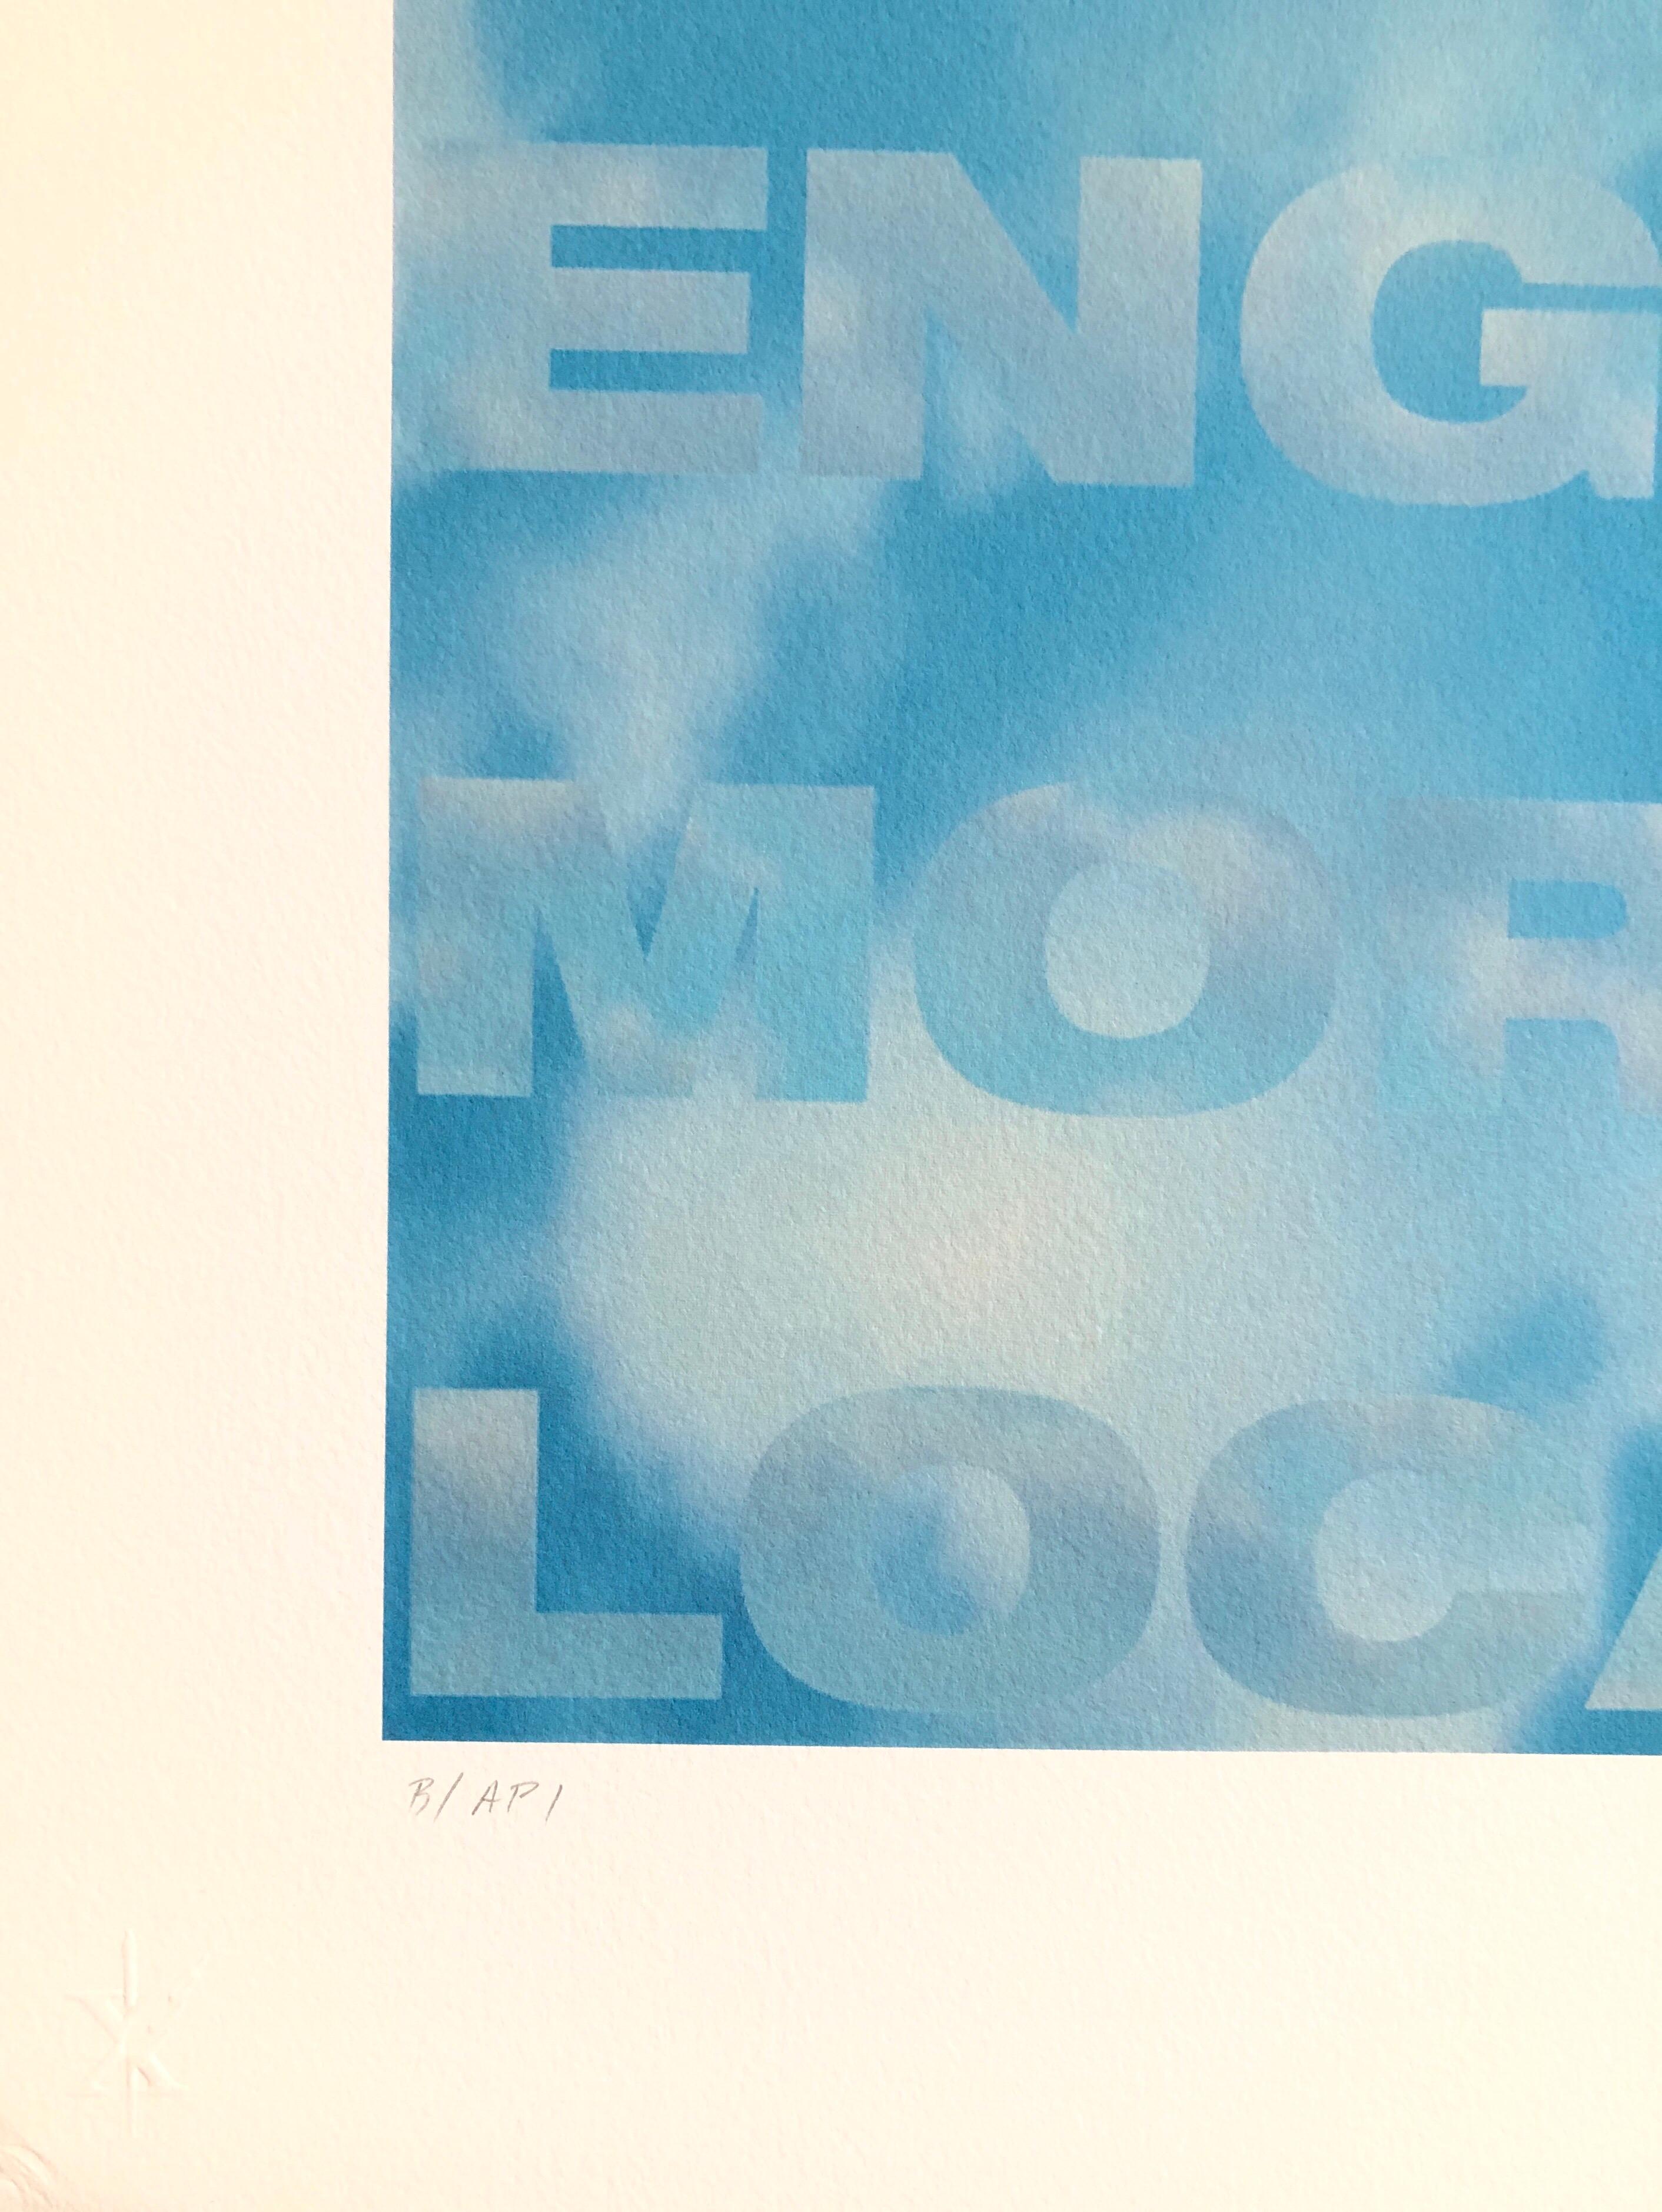 Großer himmelblauer Iris-Druck Texturbasierter Konzeptueller Muse X LA Künstler 1 von 2 B (Abstrakt), Print, von Fred Fehlau